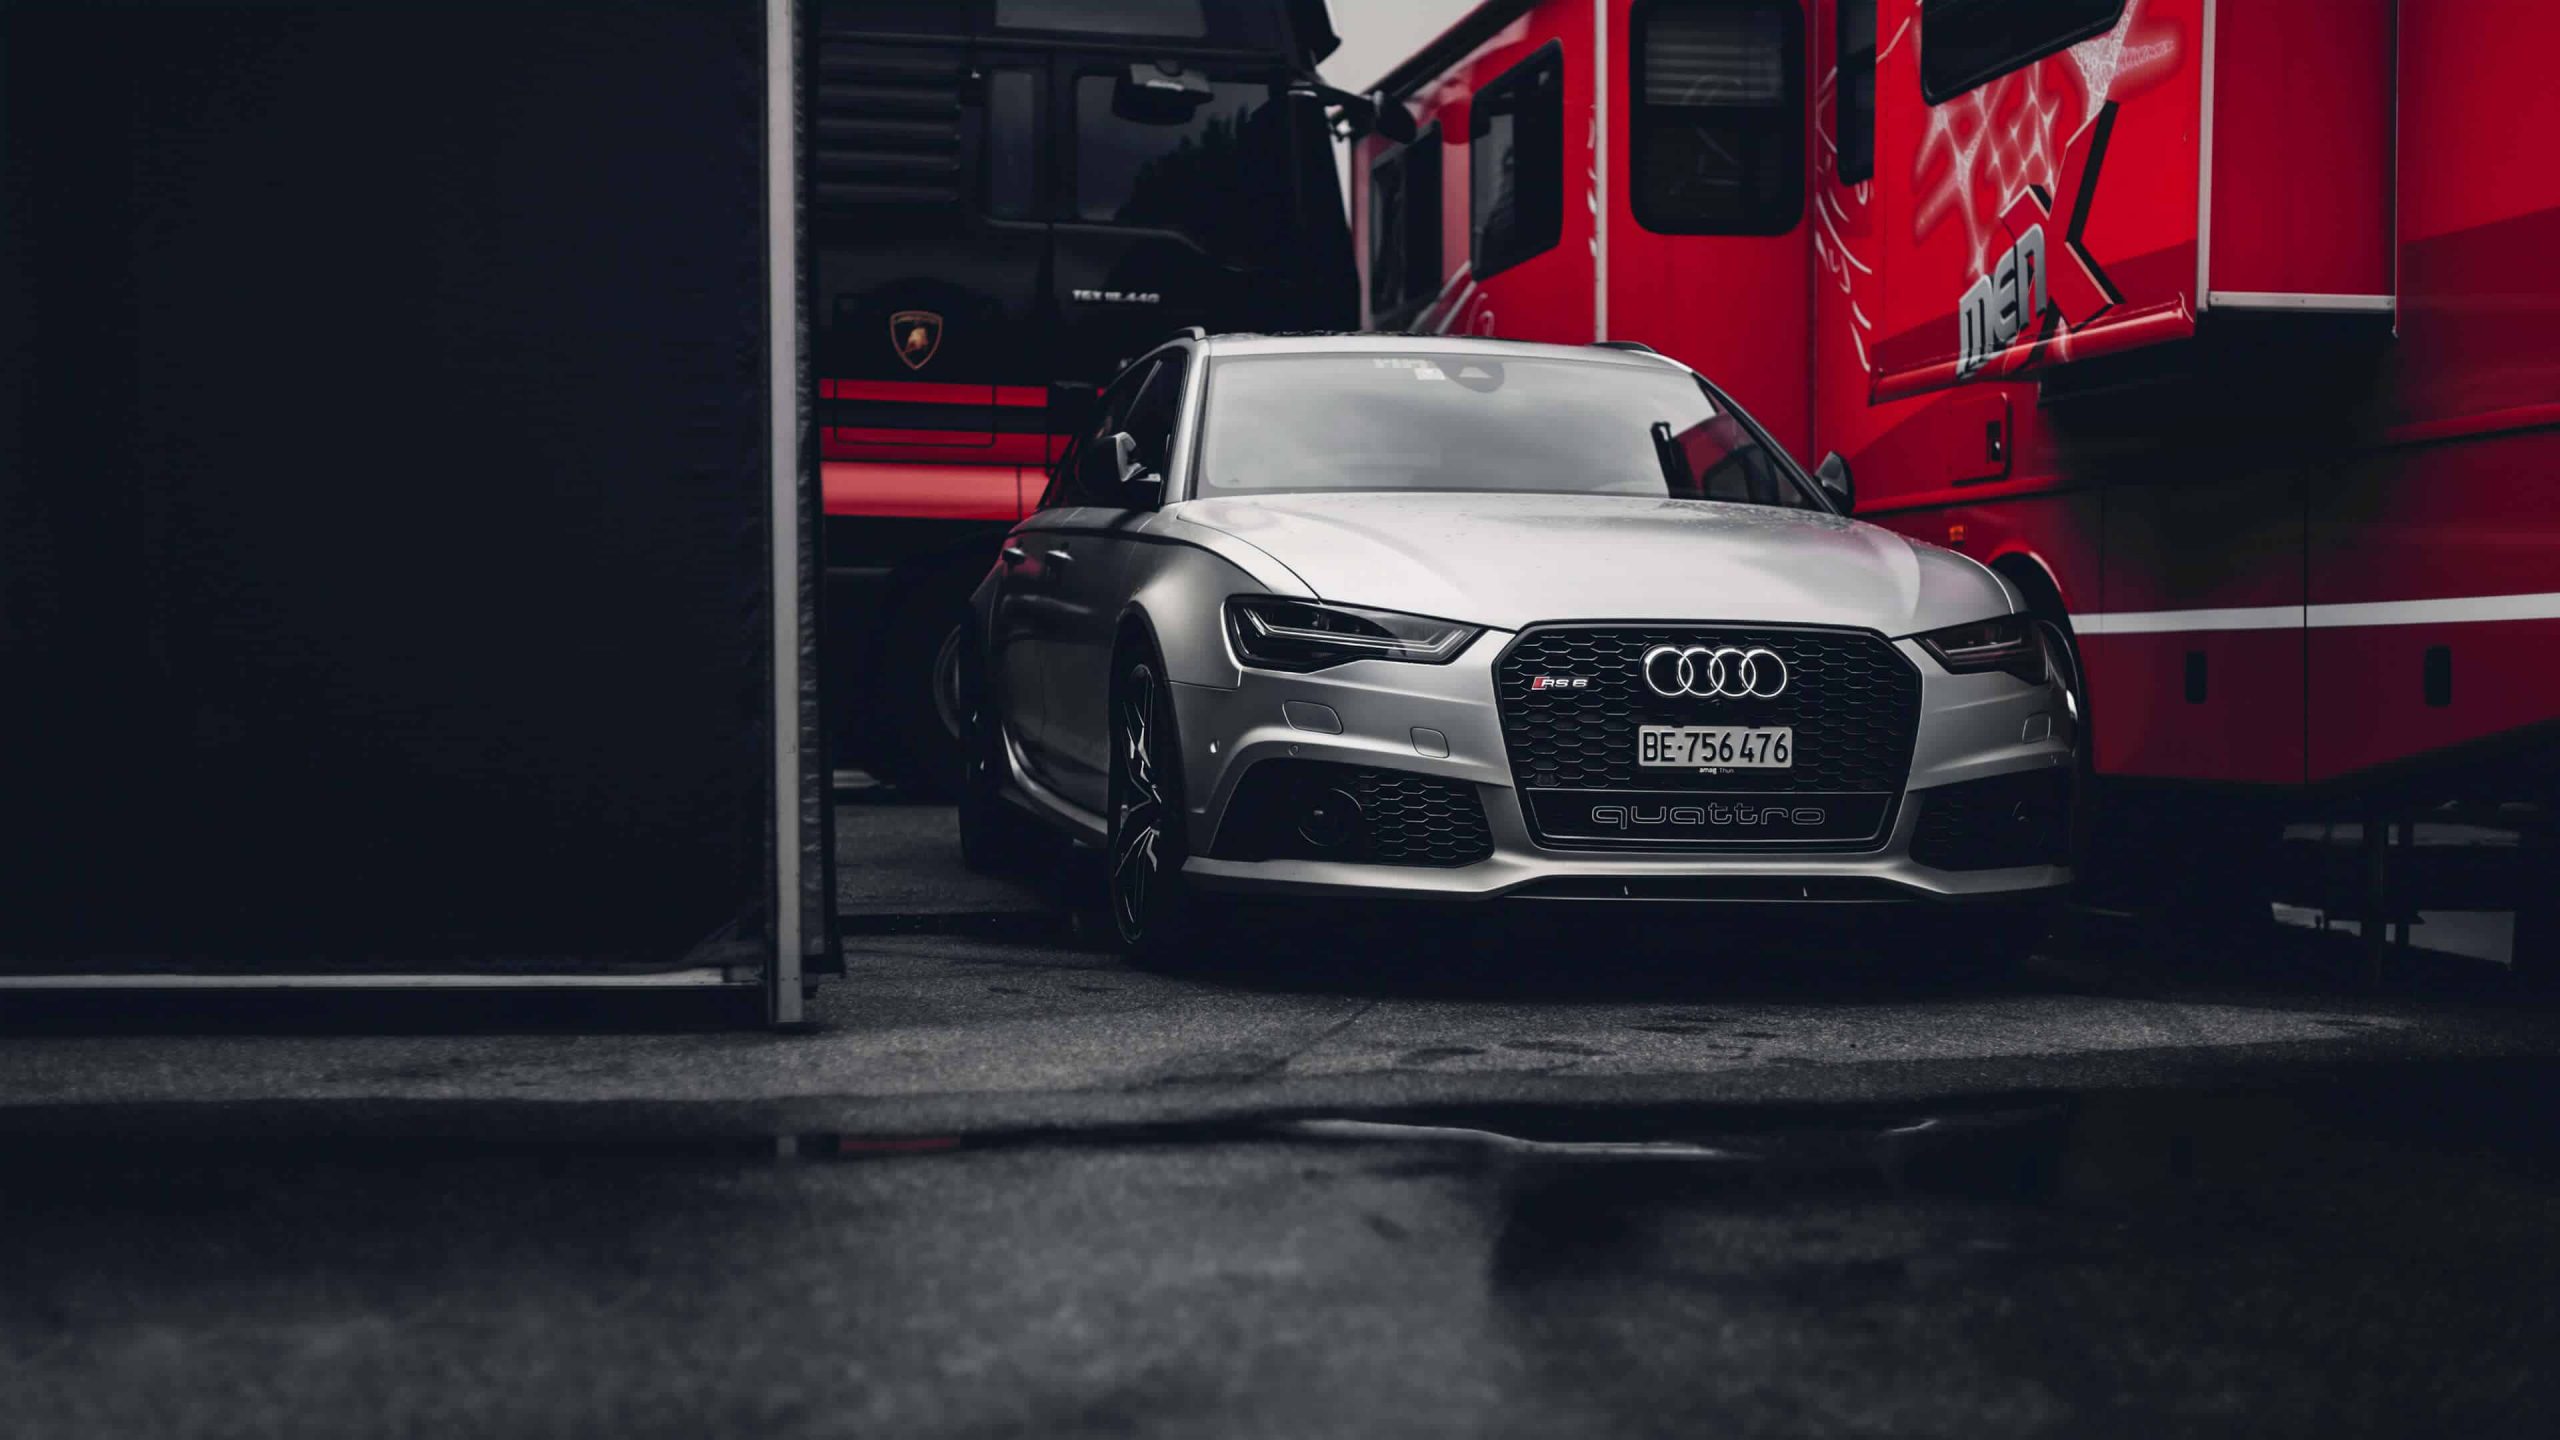 Audi r8 Hd Wallpapers 1080p Download 2021